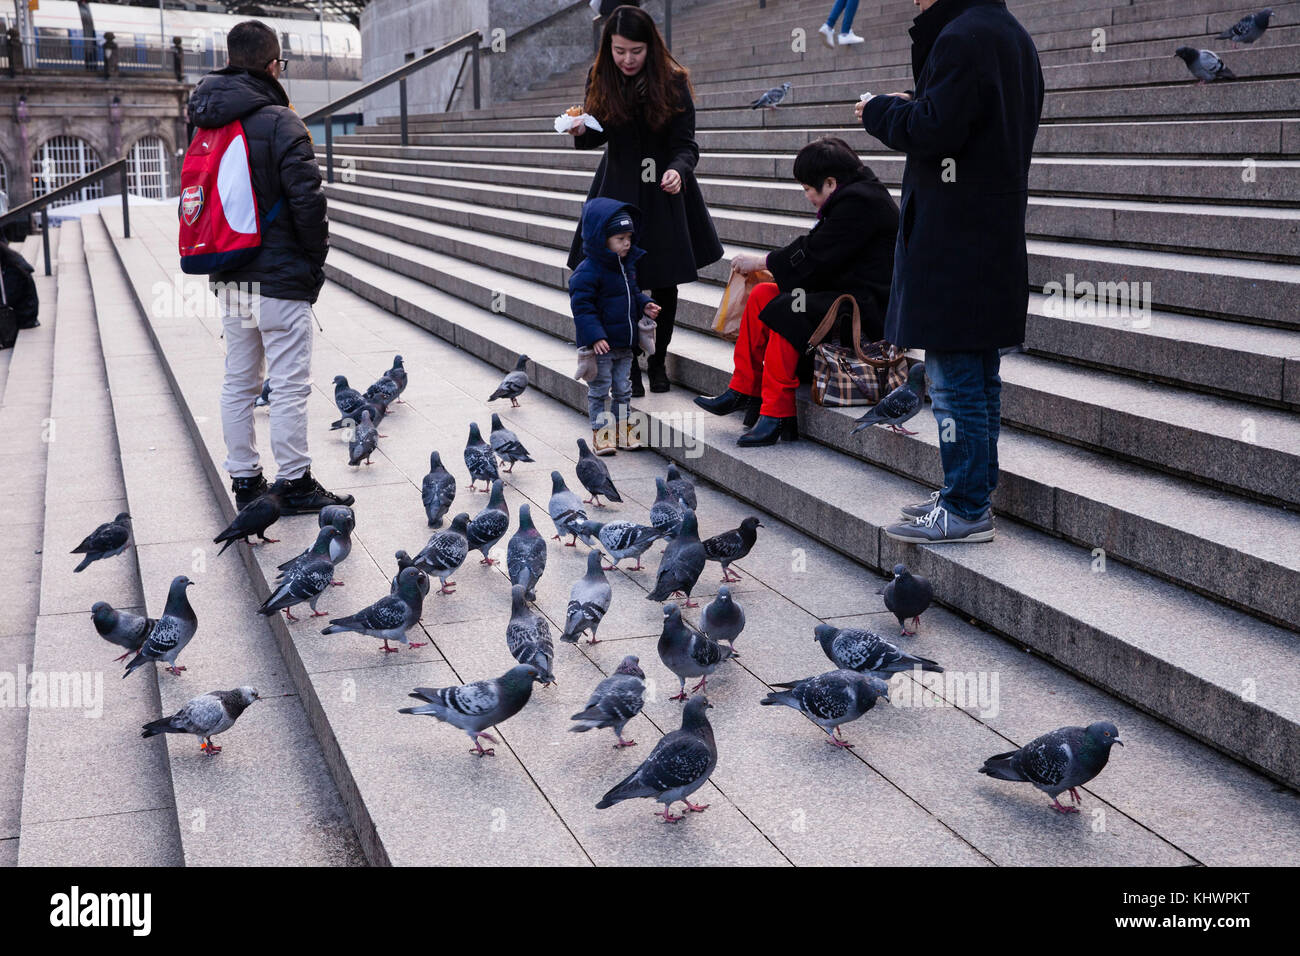 Germania, Colonia, piccioni selvatici vicino alla cattedrale. Deutschland, Koeln, Stadttauben auf der Treppe zur Domplatte. - Foto Stock